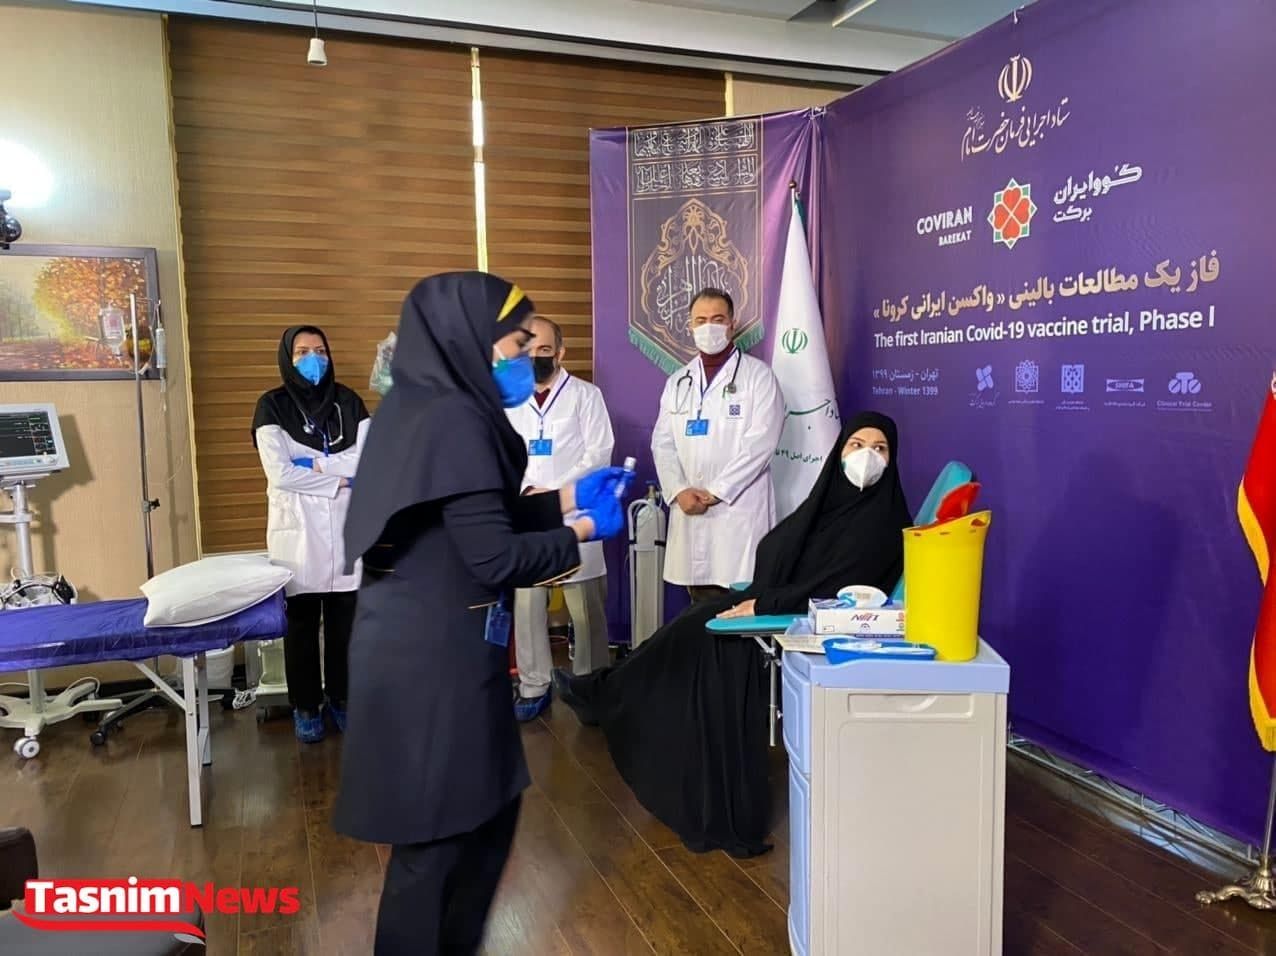 وزارت بهداشت : هنوز  واکسن خارجی به ایران نرسیده است  

